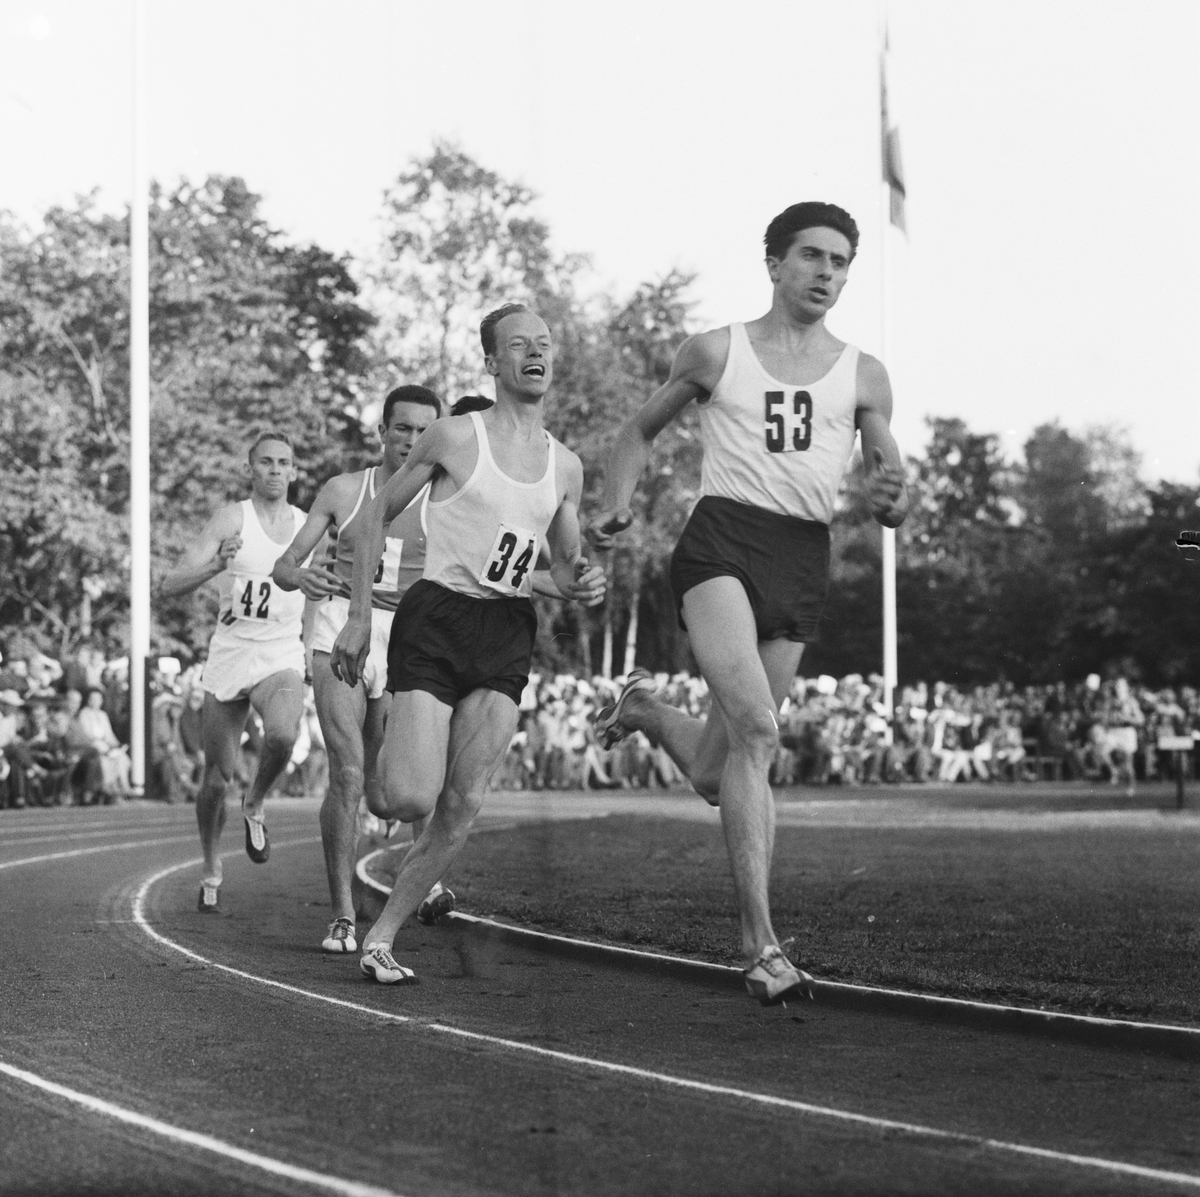 Dan Waern (nr 34) satte åren 1958-1959 tre världsrekord på distansen 1000 meter. Bilden lär vara tagen vid något av dessa världsrekordlopp, möjligen på Tingvalla i Karlstad  den 21 augusti 1959.